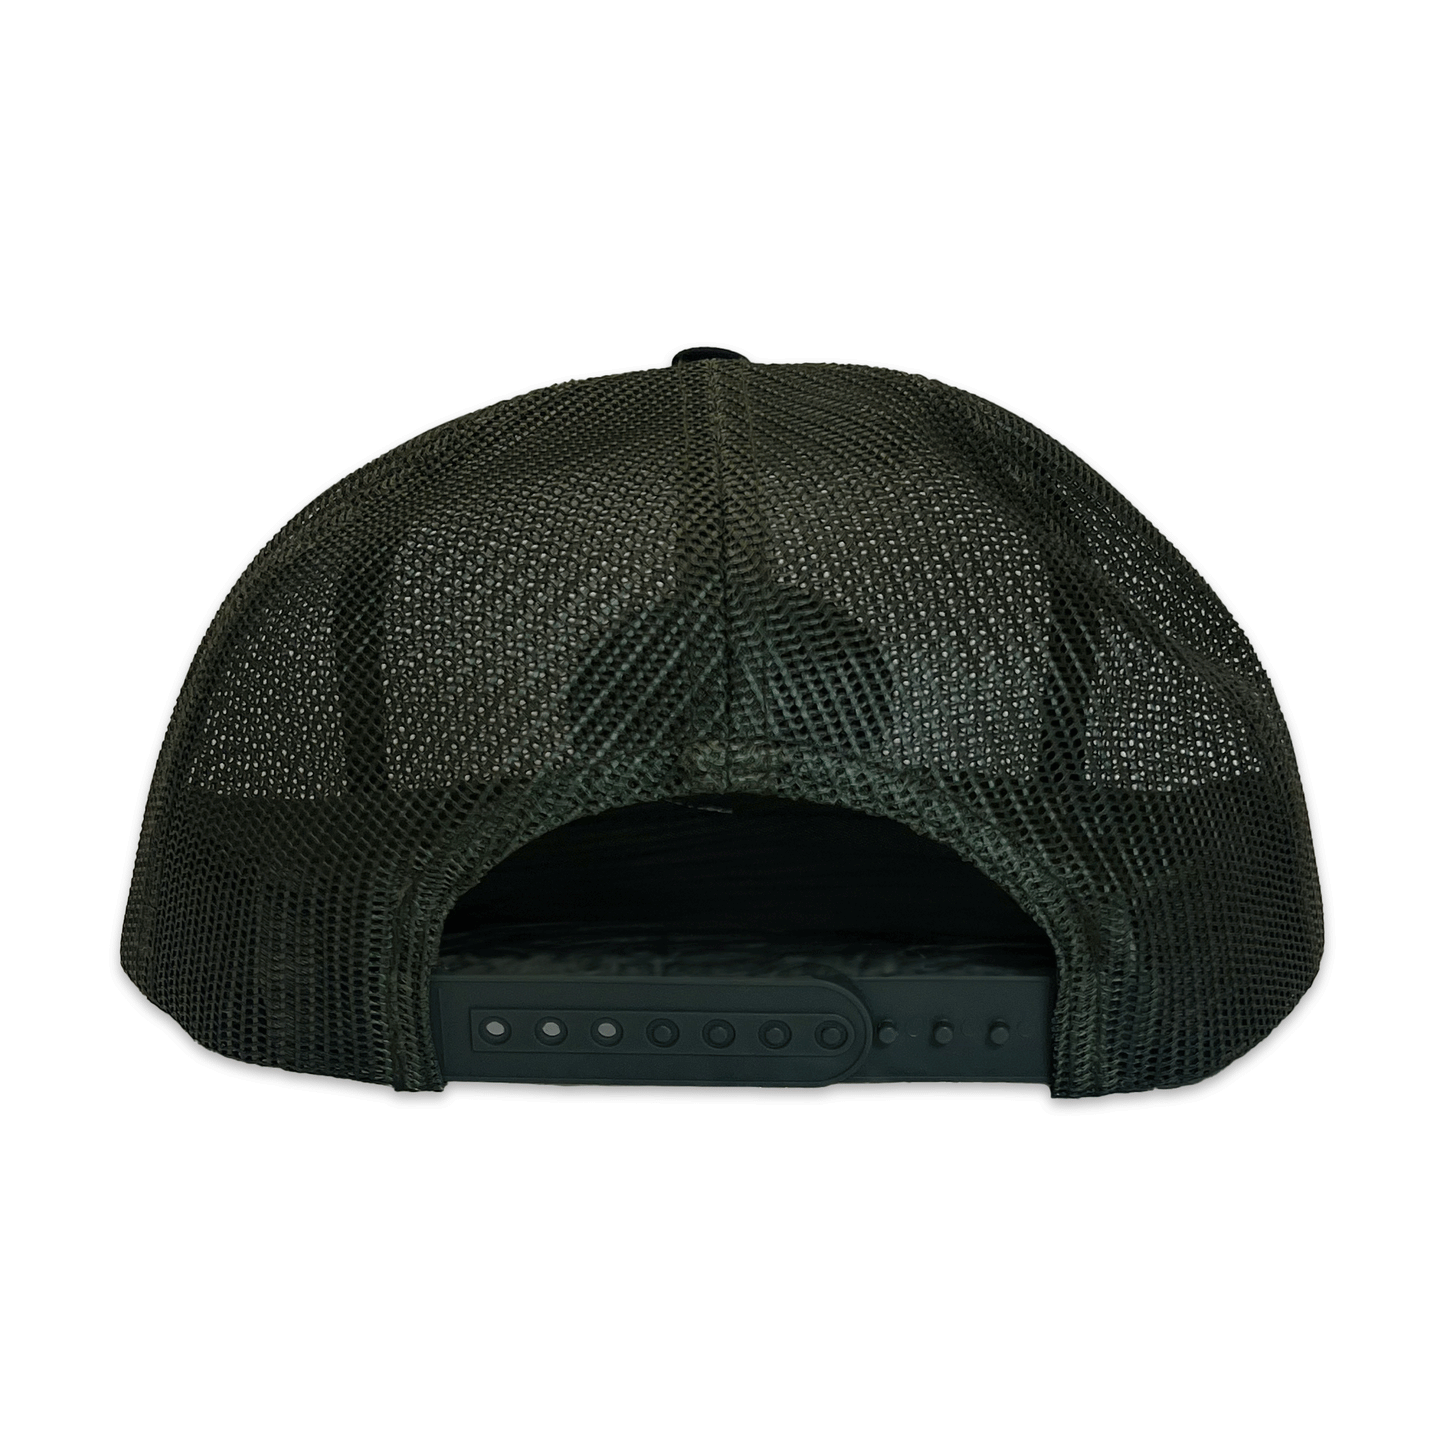 Shur-Gain. Full Mesh Hat. Green/Black.